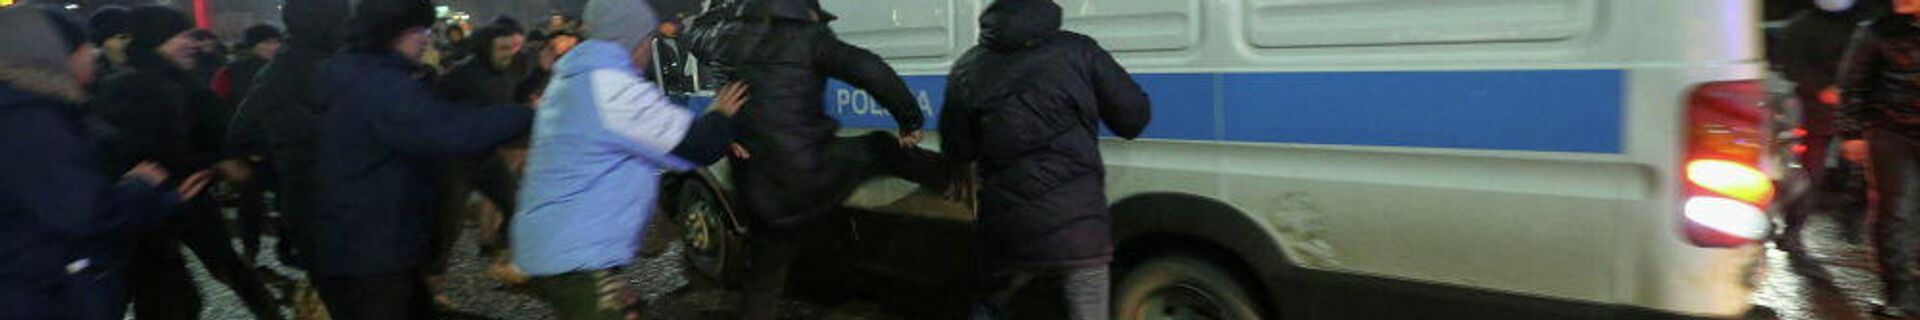 Митингующие в Алматы нападают на полицейский автомобиль - Sputnik Узбекистан, 1920, 07.01.2022